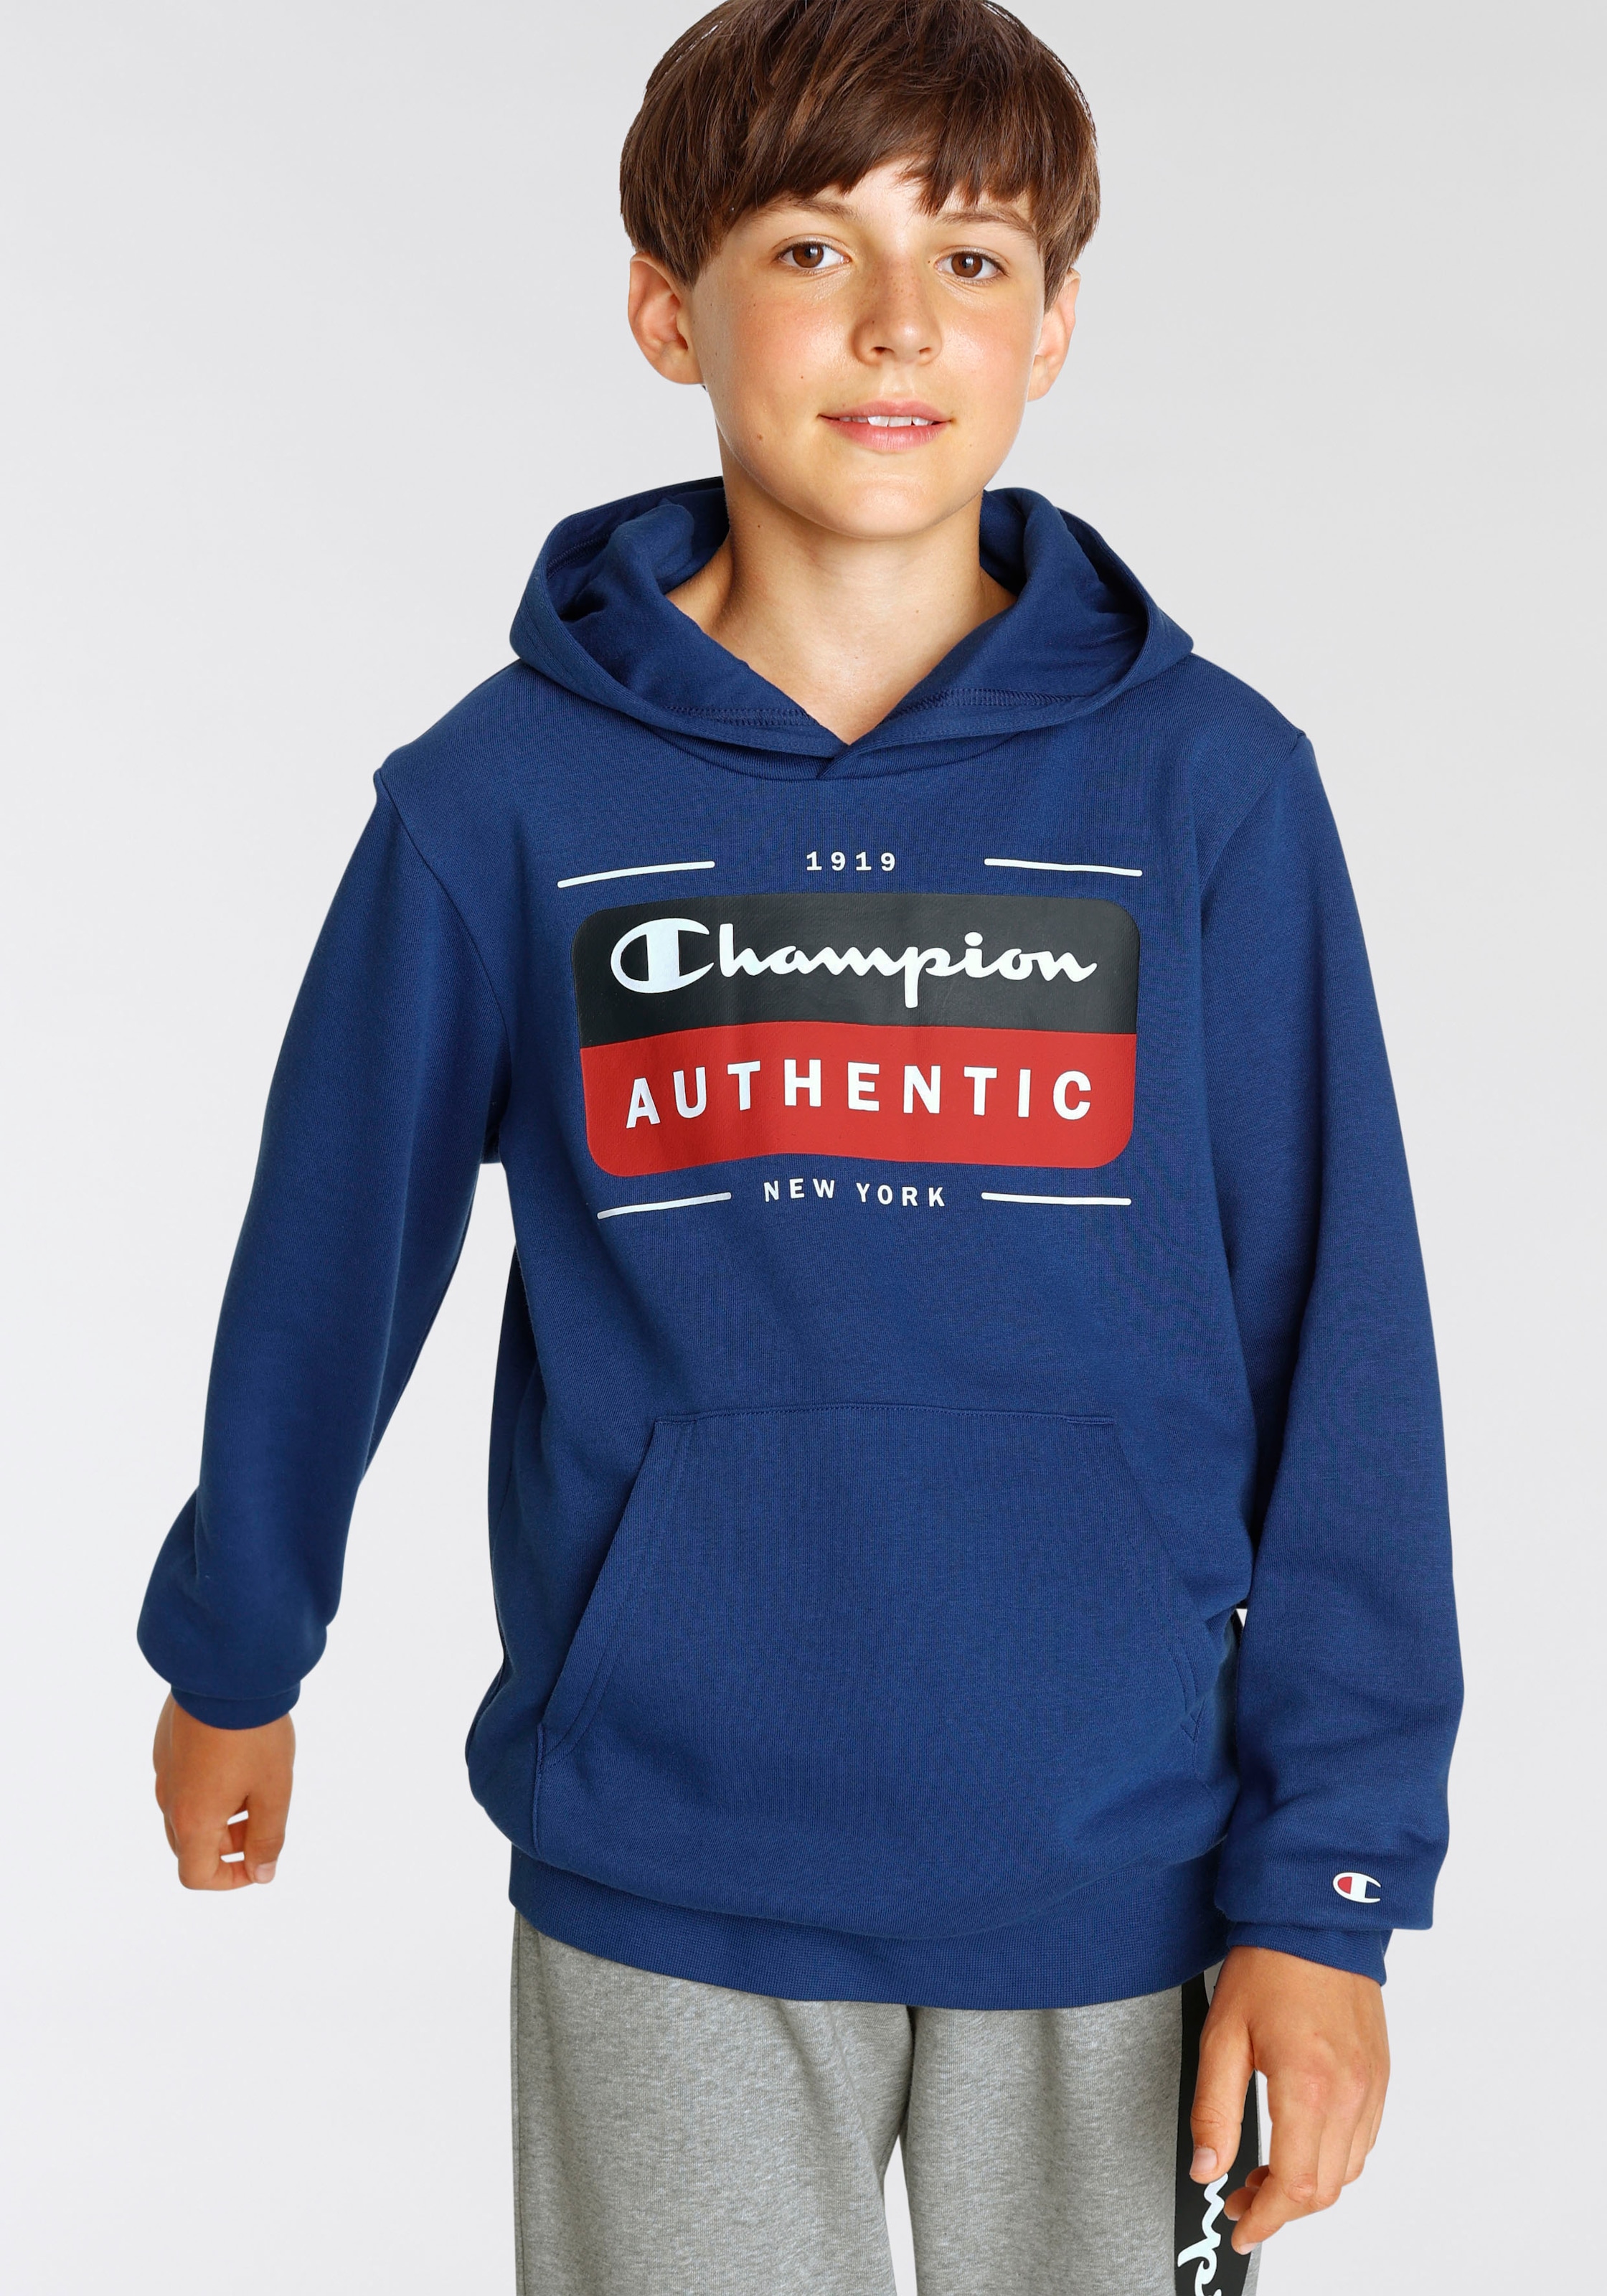 für Sweatshirt Hooded - | Shop »Graphic Kinder« Sweatshirt Champion BAUR kaufen